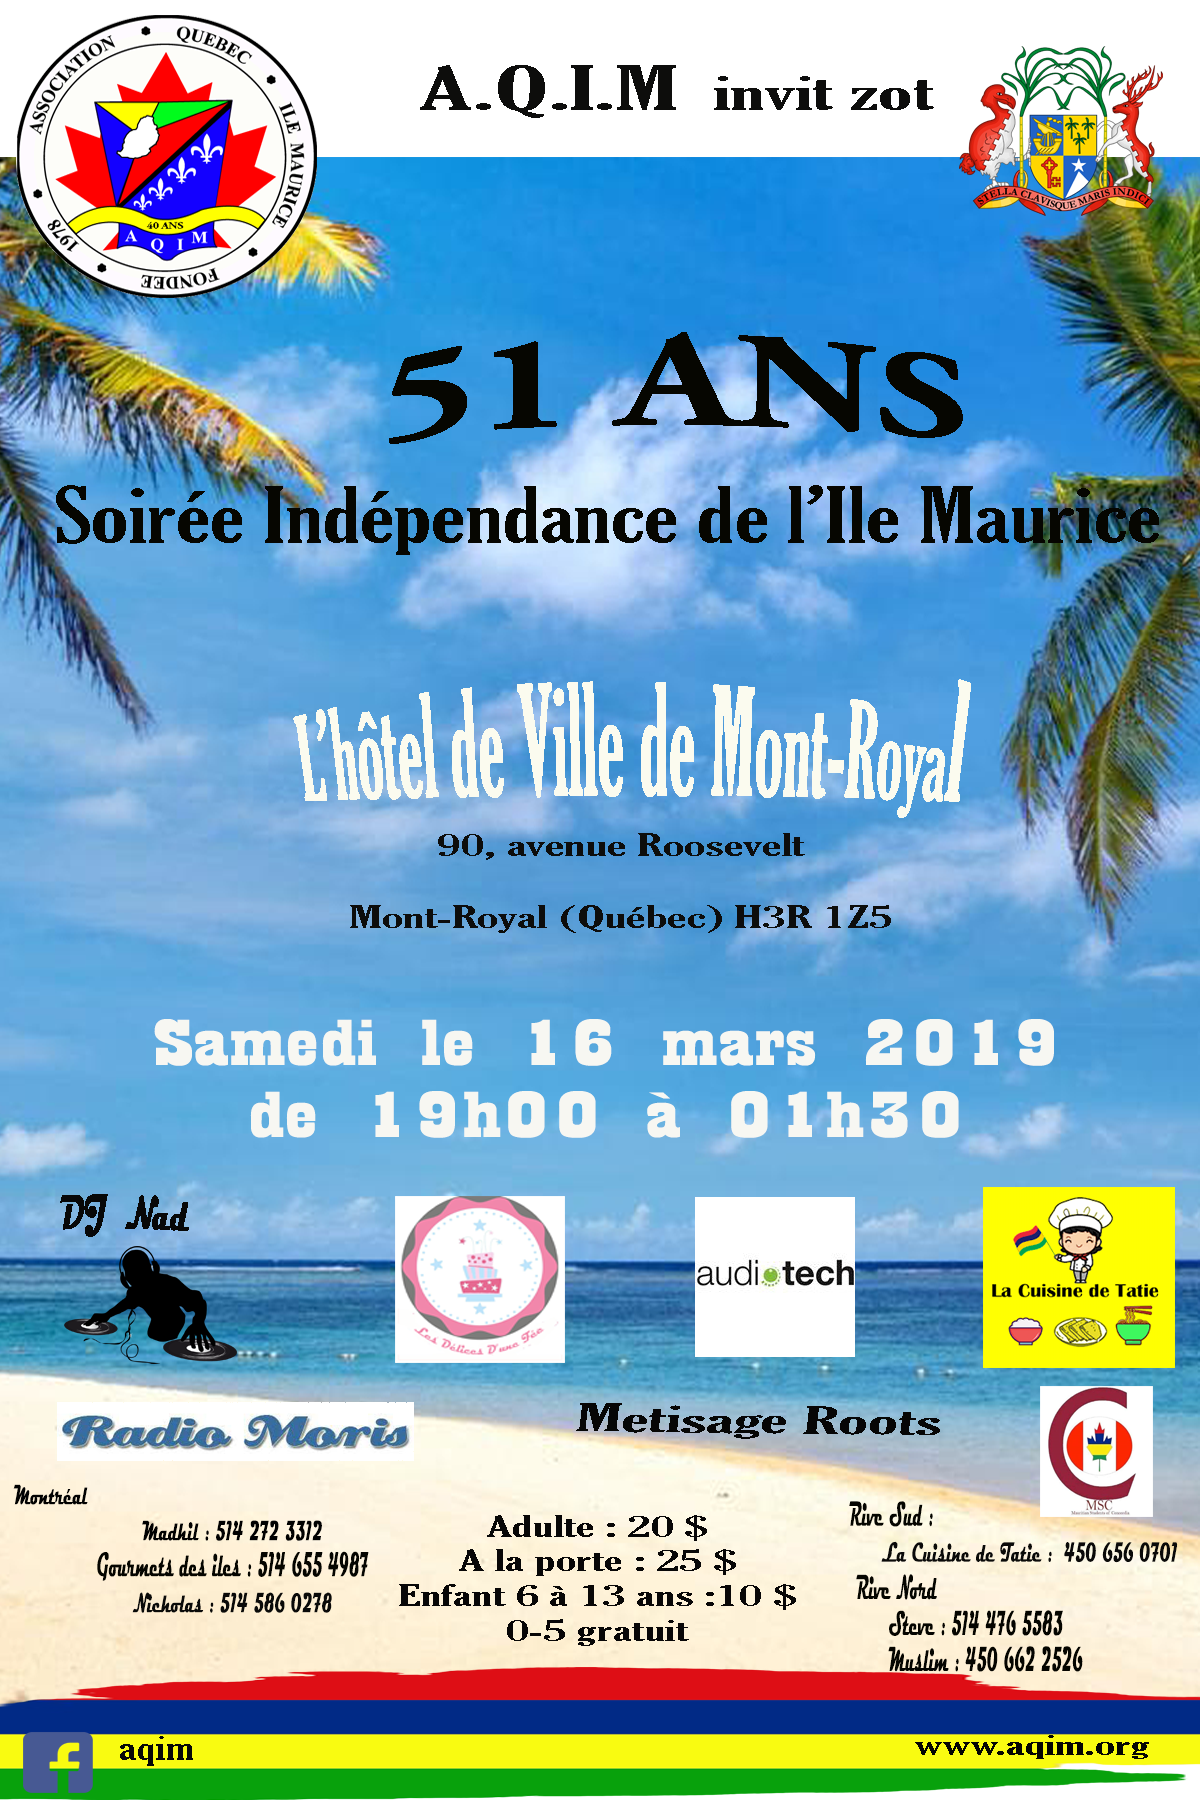 independence de l'ile maurice 2019